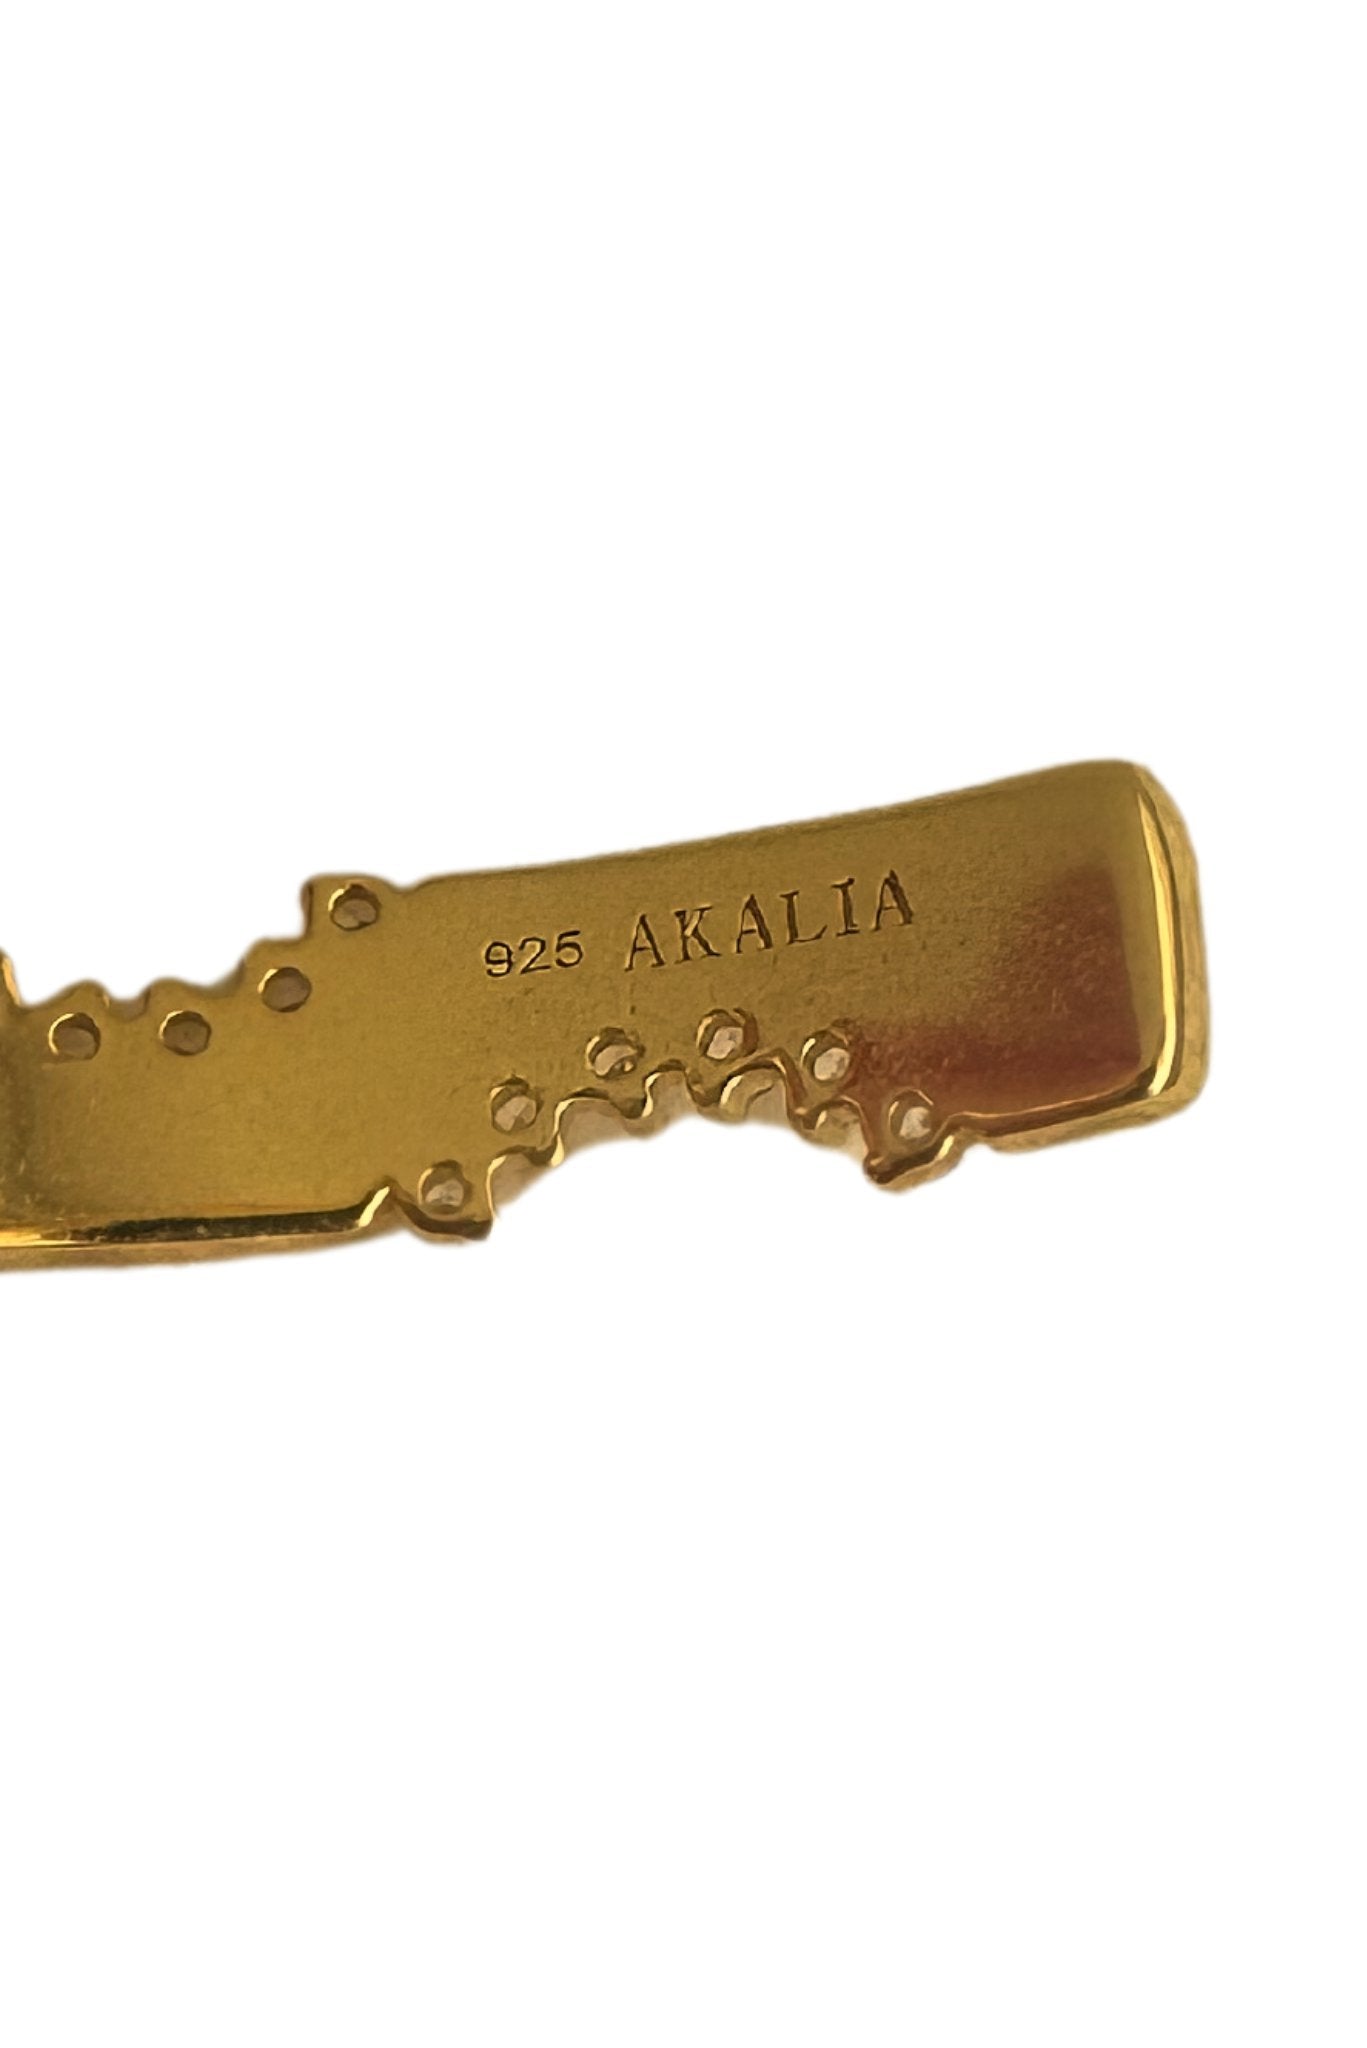 Waterproof 18k Gold Plated Sparkling Hoop Earring - Akalia